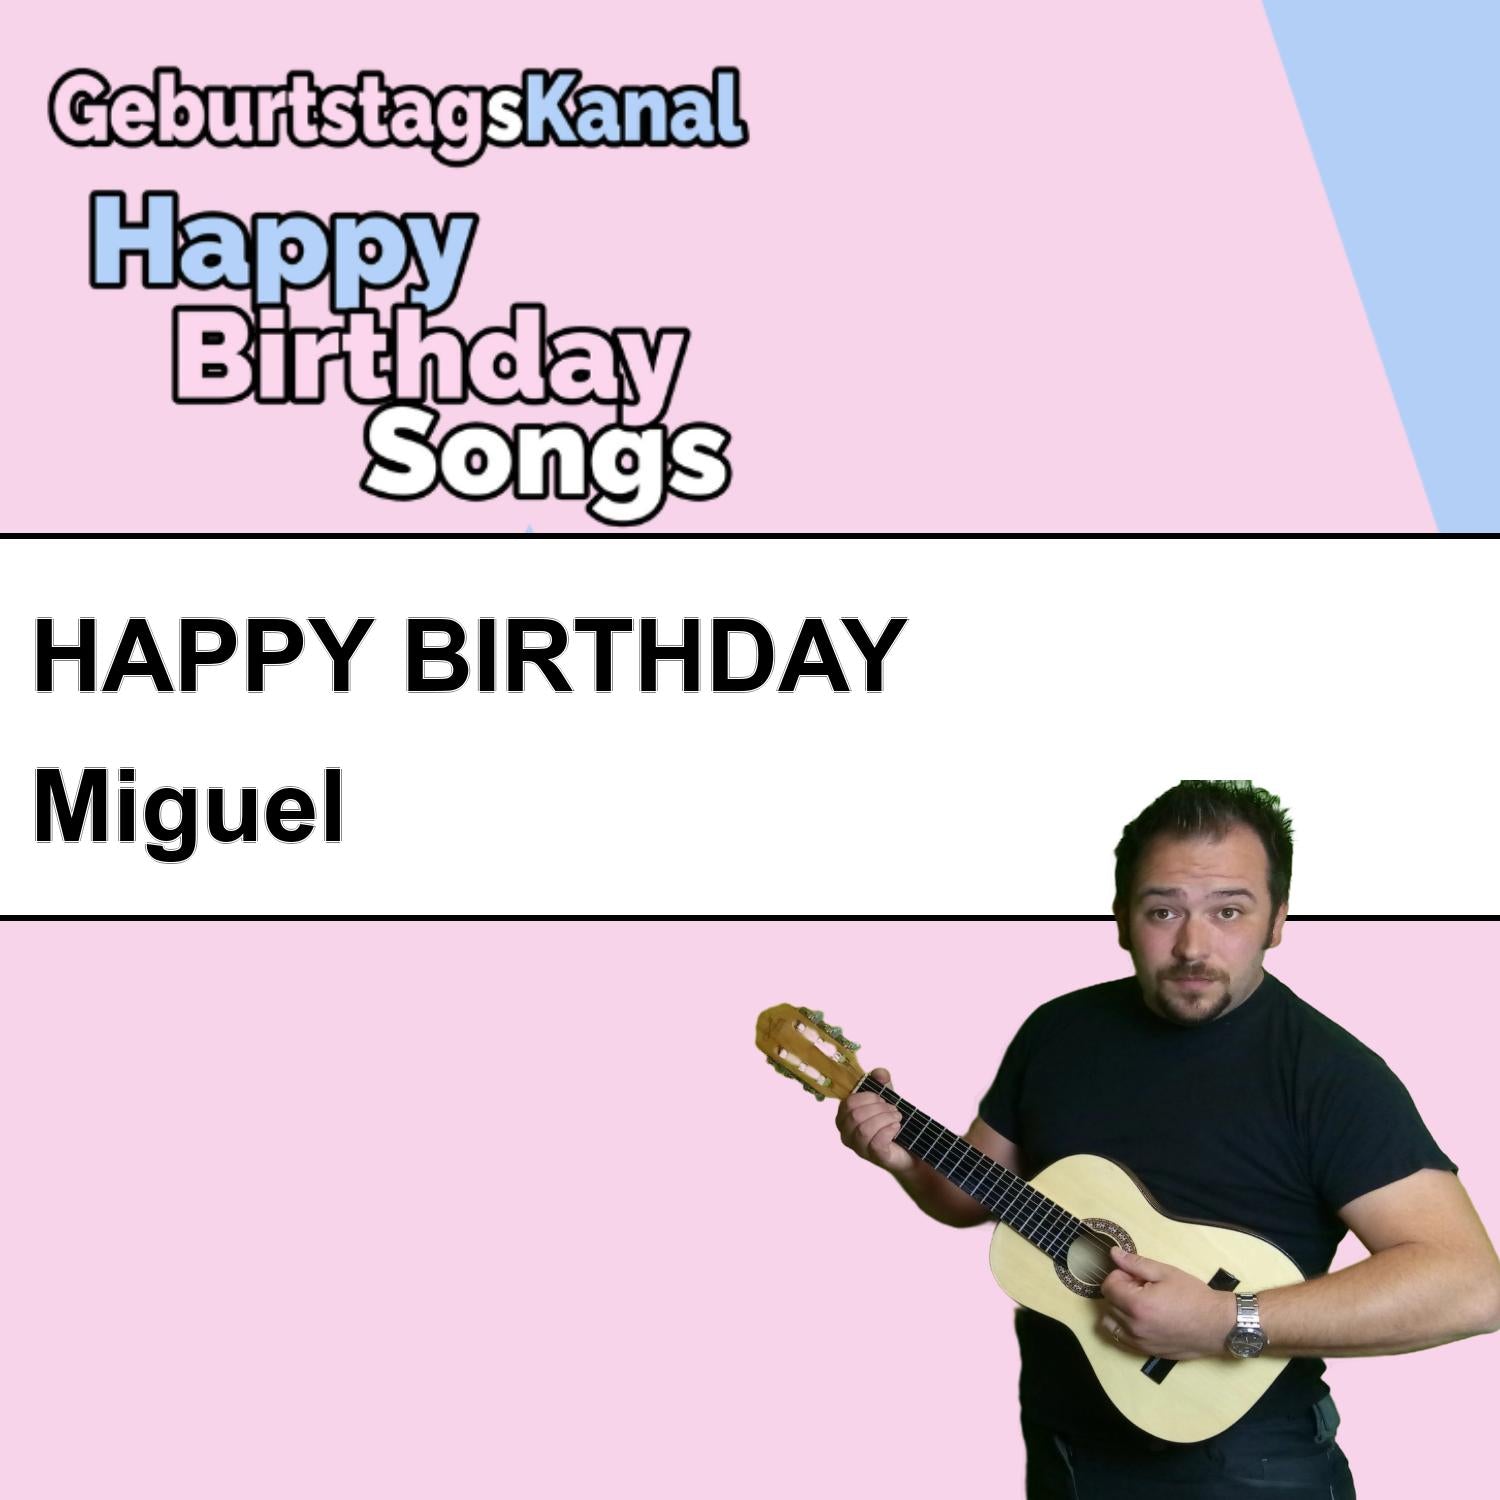 Produktbild Happy Birthday to you Miguel mit Wunschgrußbotschaft